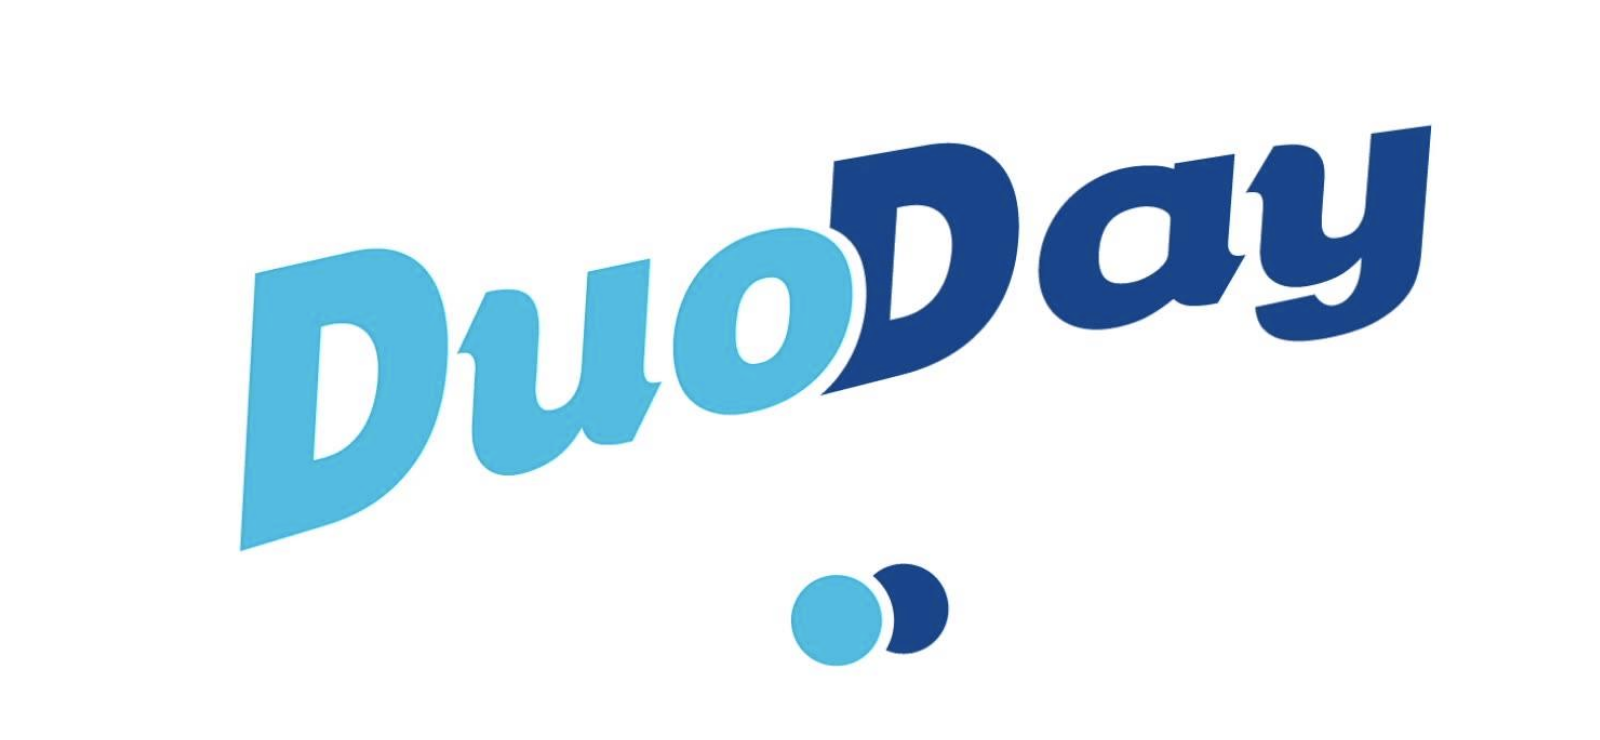 Le groupe Lagardère s'implique dans l'opération DuoDay